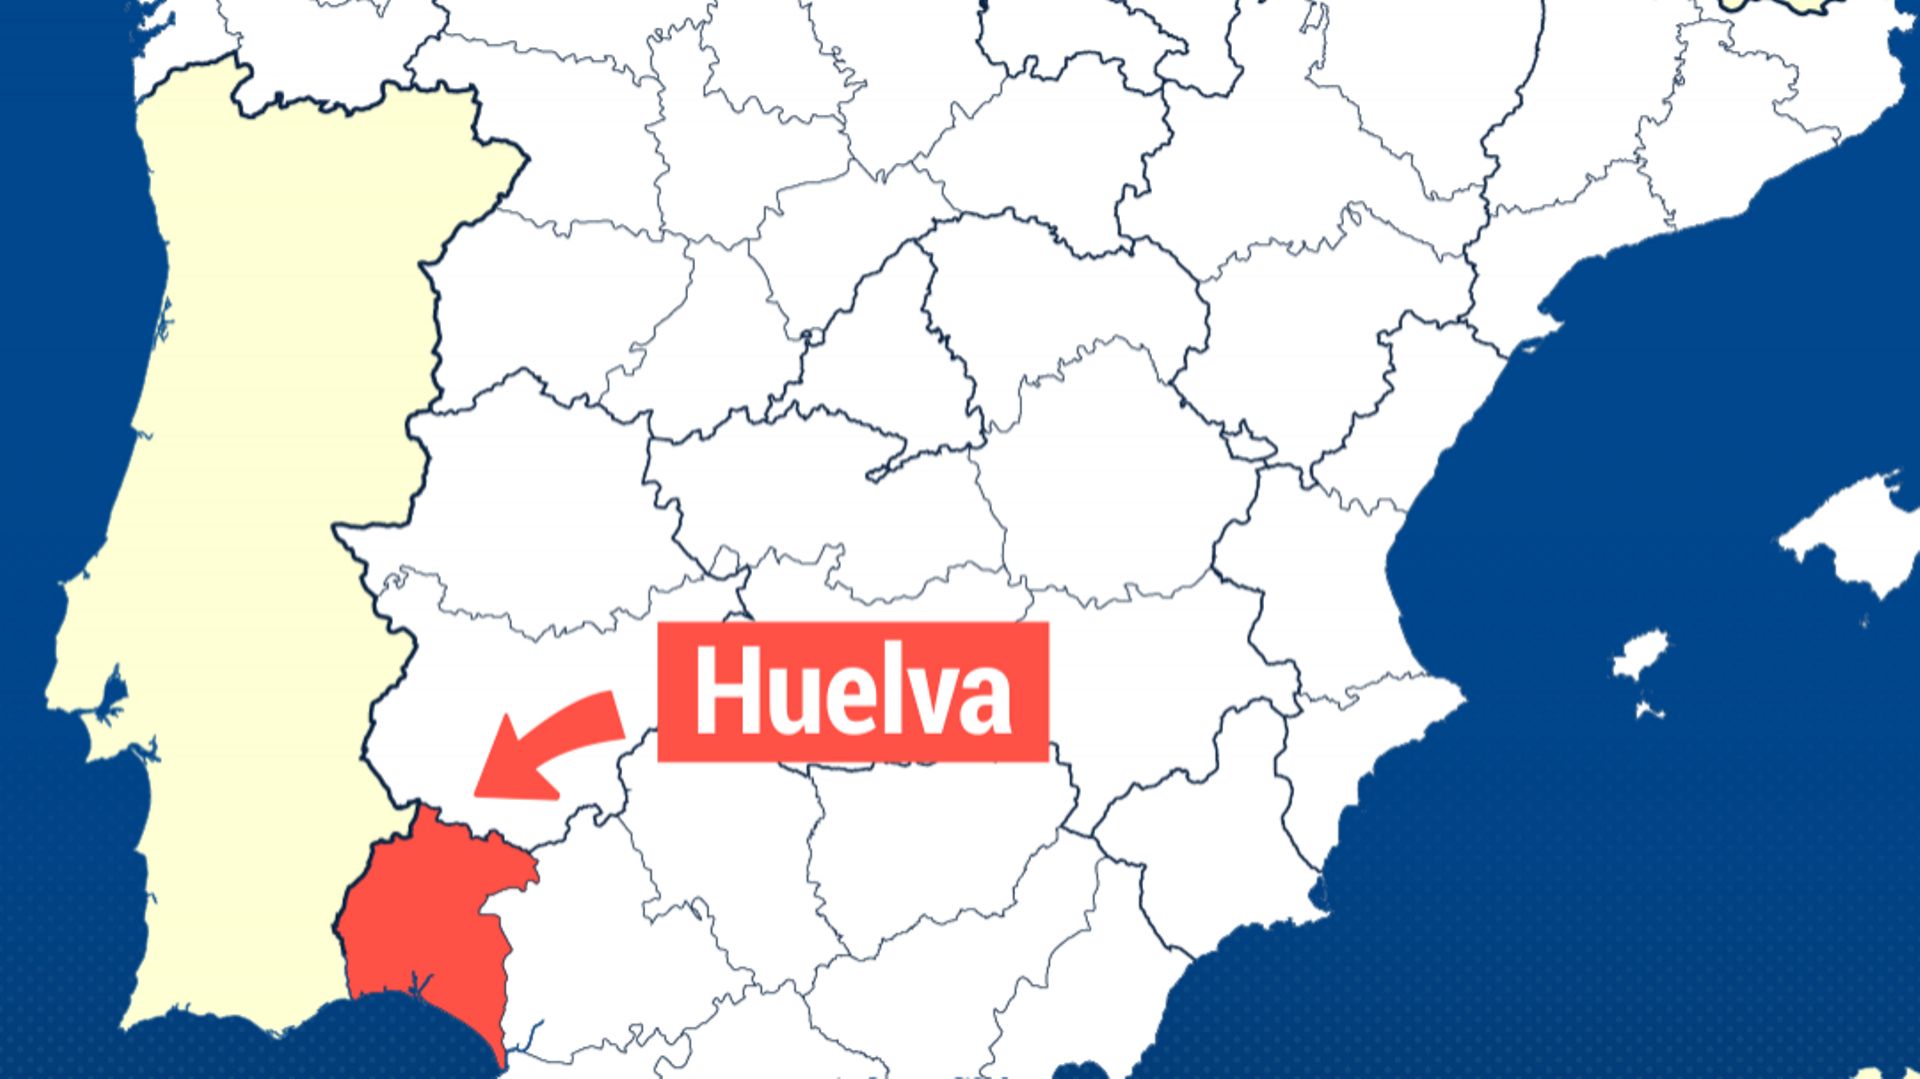 La région de Huelva est la première région exportatrice de fraises en Europe